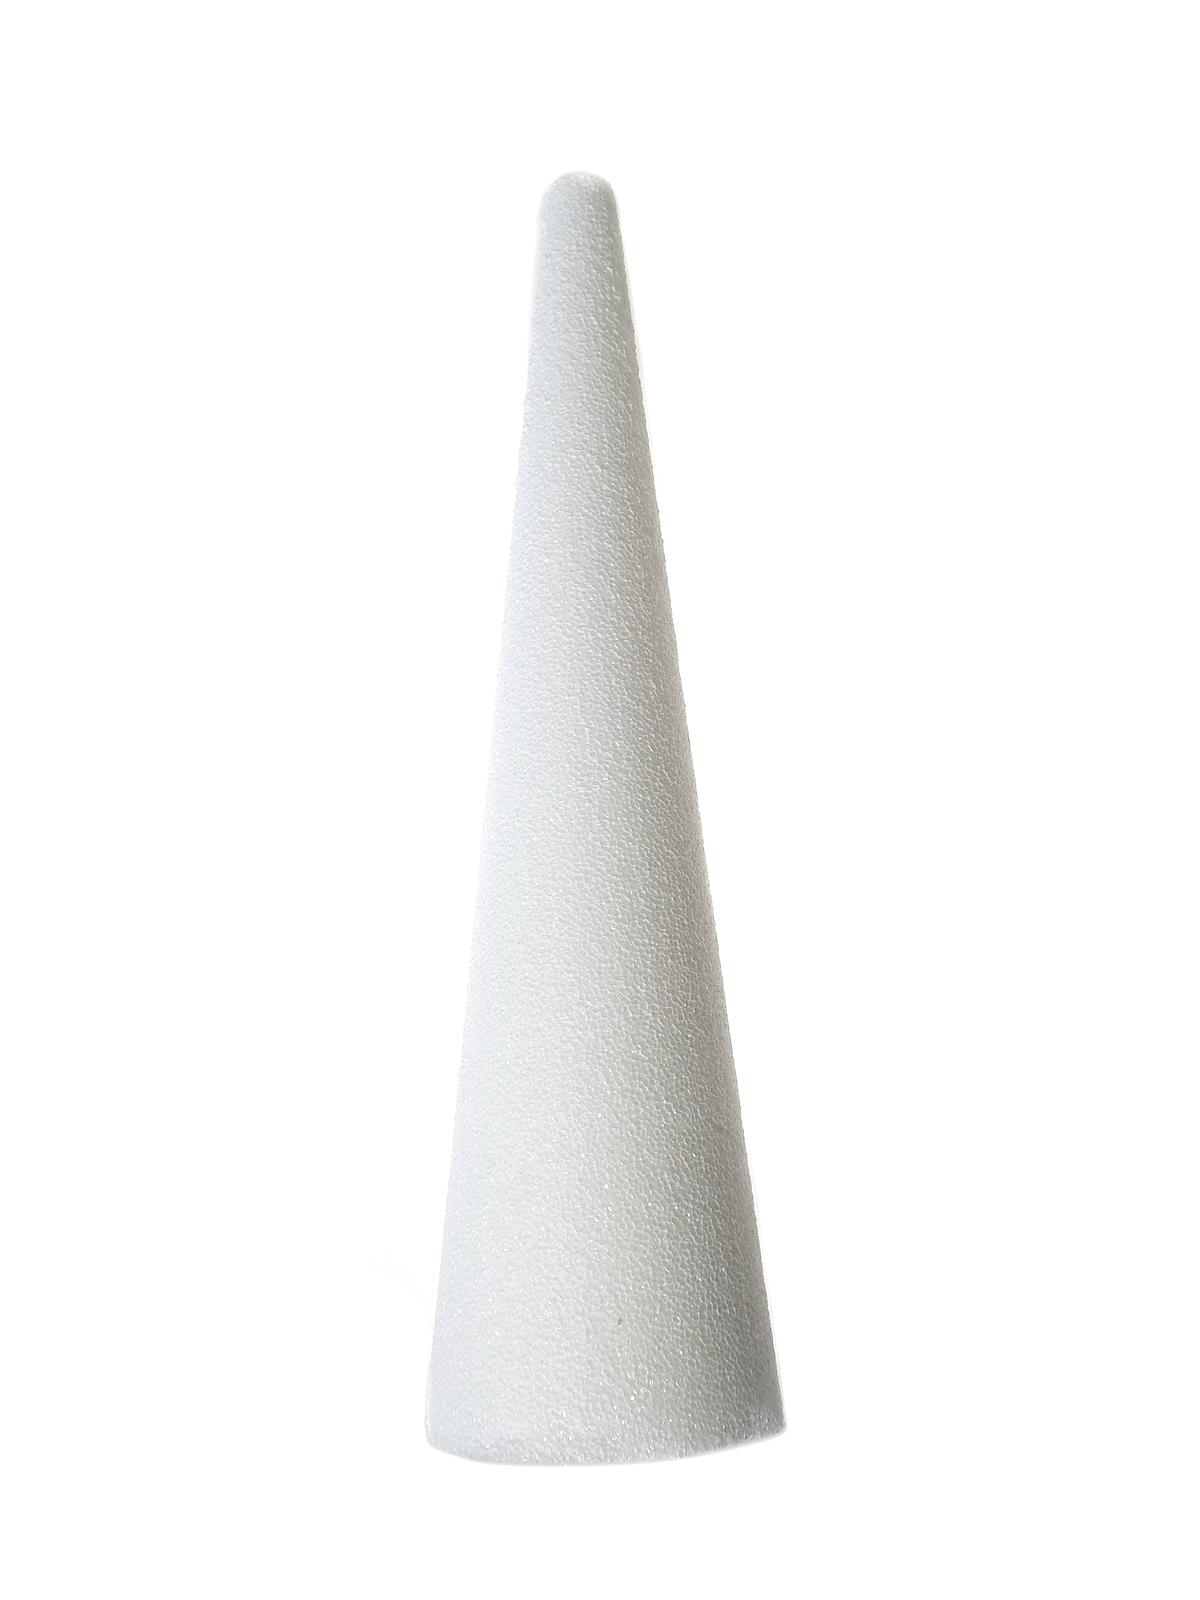 Styrofoam Cones 17 3 4 In. 5 In.